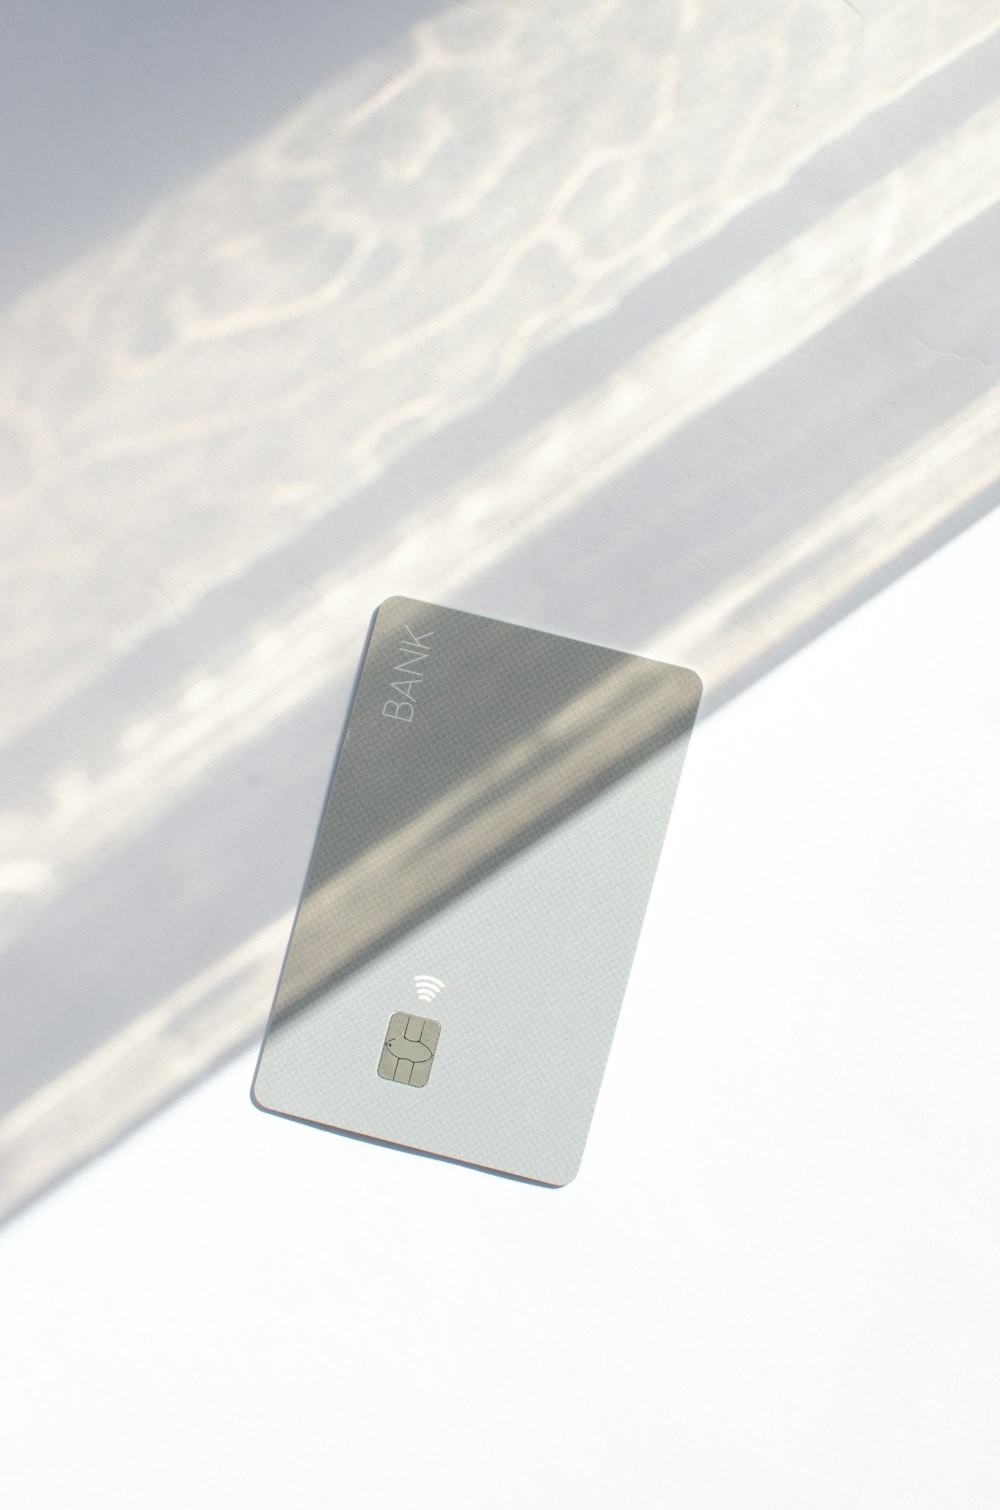 Una tarjeta de crédito plateada encima de una mesa